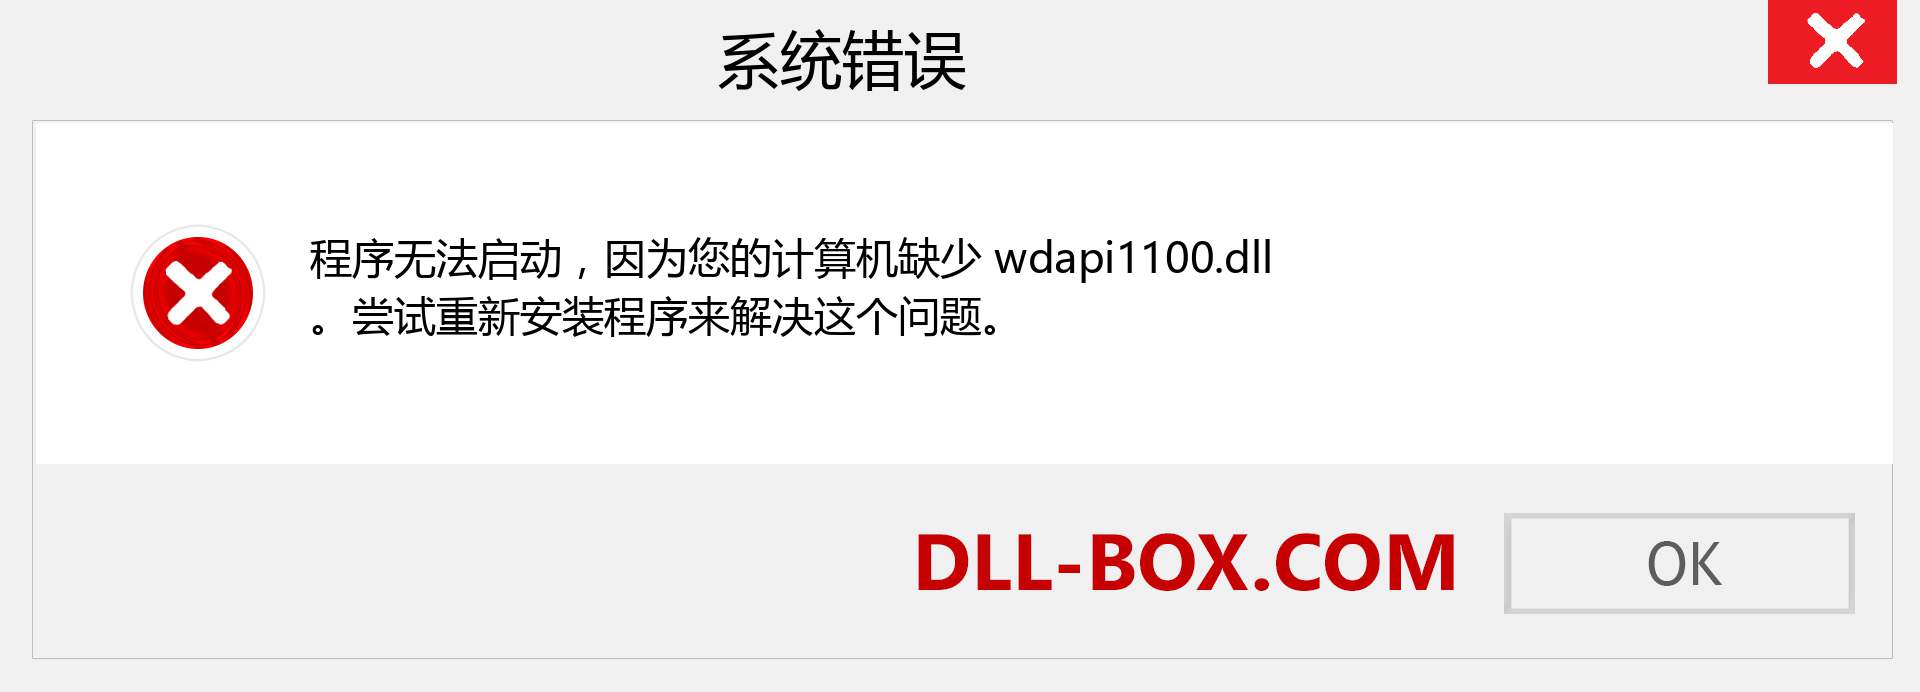 wdapi1100.dll 文件丢失？。 适用于 Windows 7、8、10 的下载 - 修复 Windows、照片、图像上的 wdapi1100 dll 丢失错误